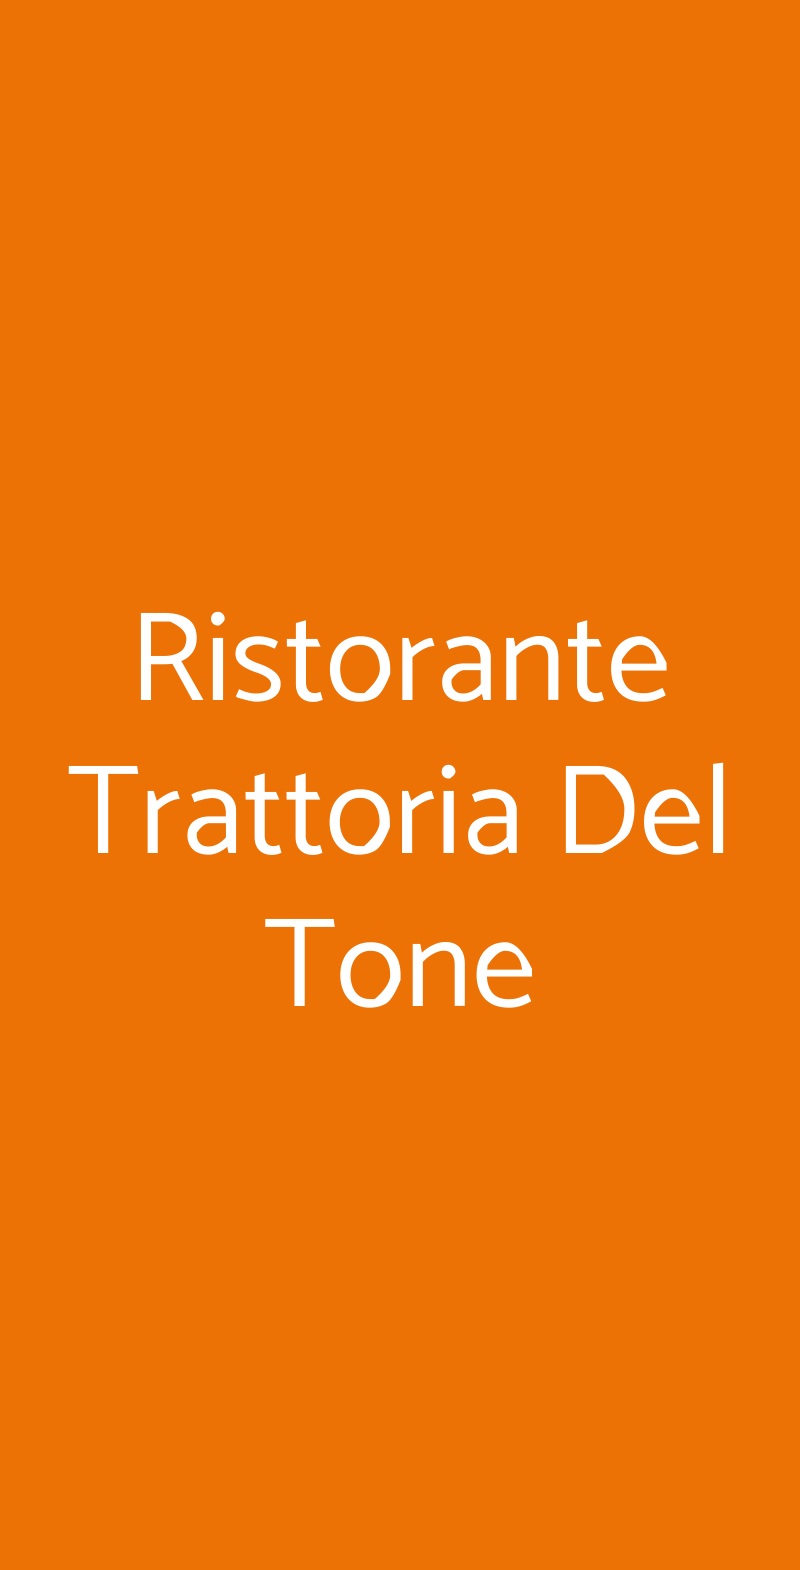 Ristorante Trattoria Del Tone Curno menù 1 pagina